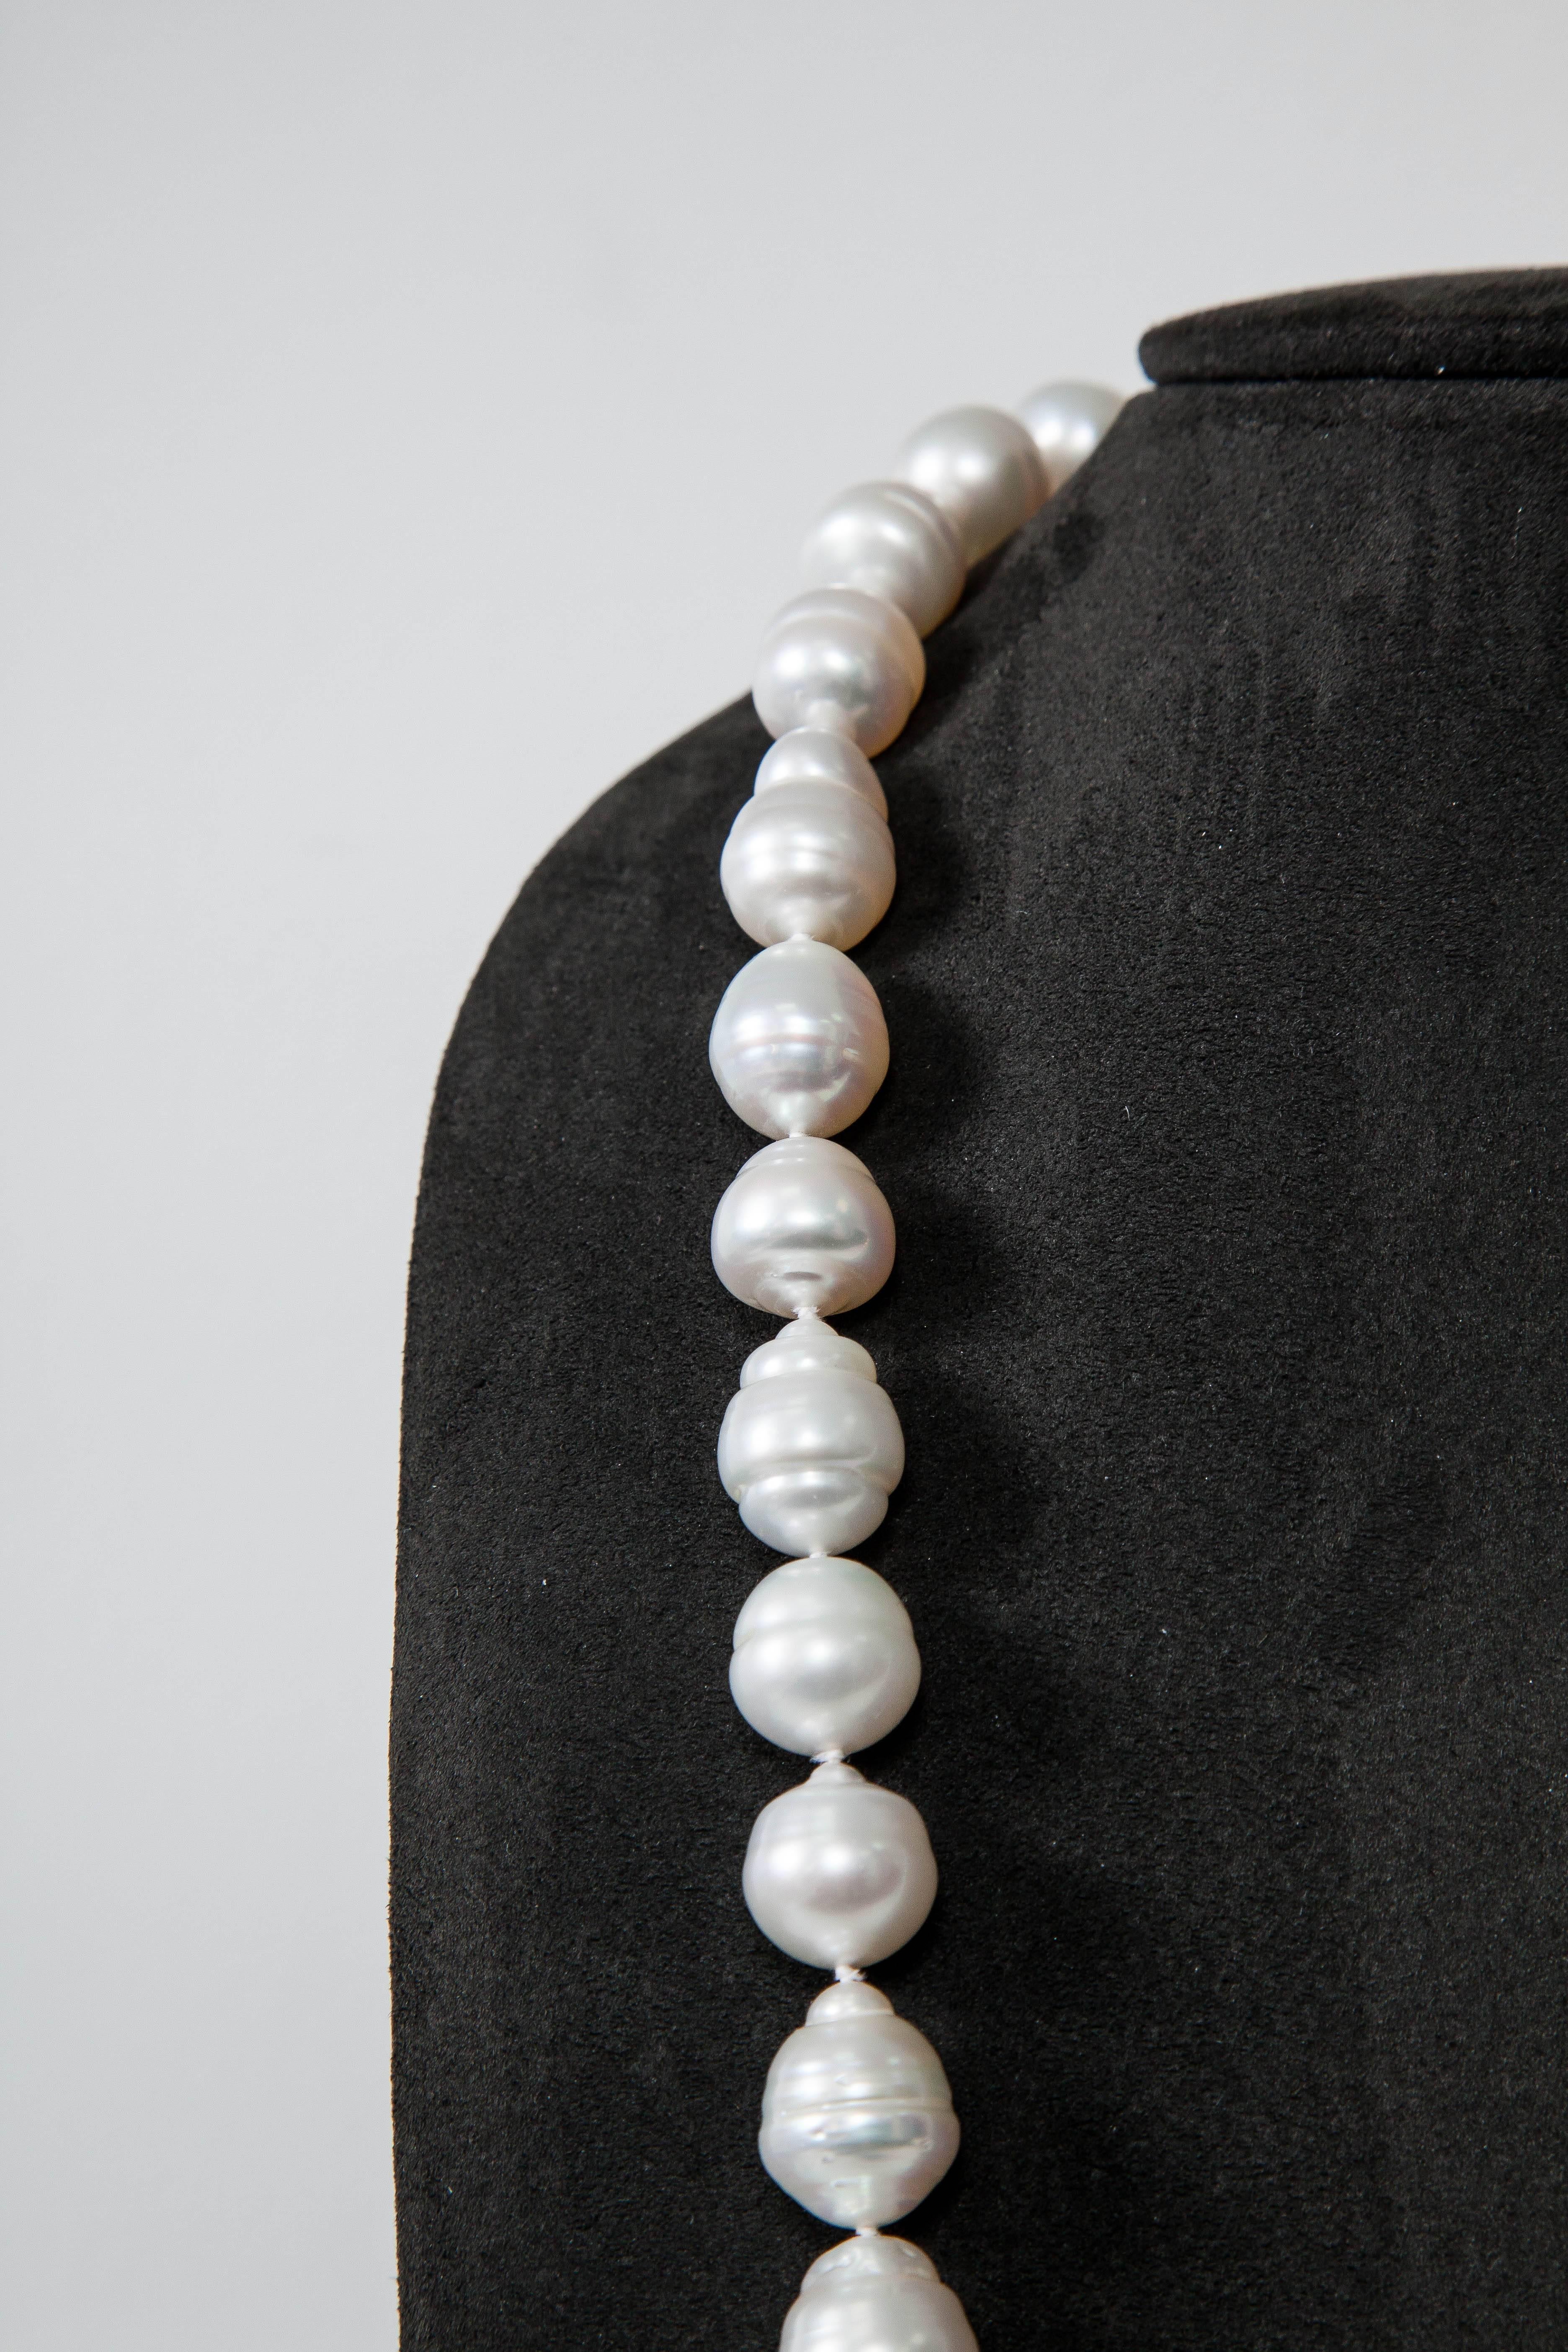 Diese barocke Halskette  hat 49 schöne Perlen  von 13 mm bis 18 mm
Opernlänge 34 